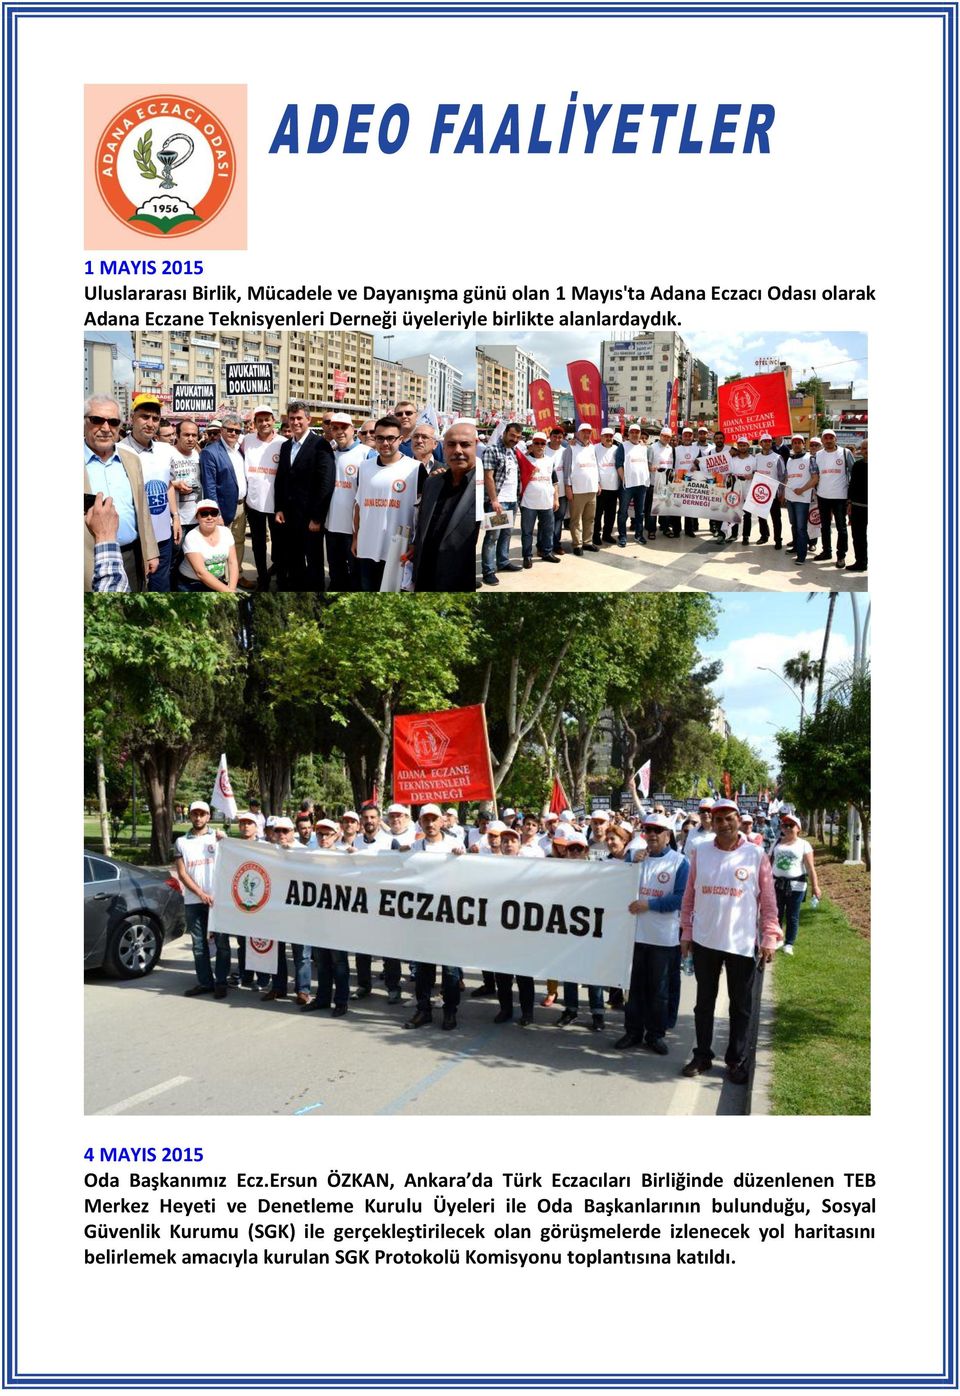 Ersun ÖZKAN, Ankara da Türk Eczacıları Birliğinde düzenlenen TEB Merkez Heyeti ve Denetleme Kurulu Üyeleri ile Oda Başkanlarının